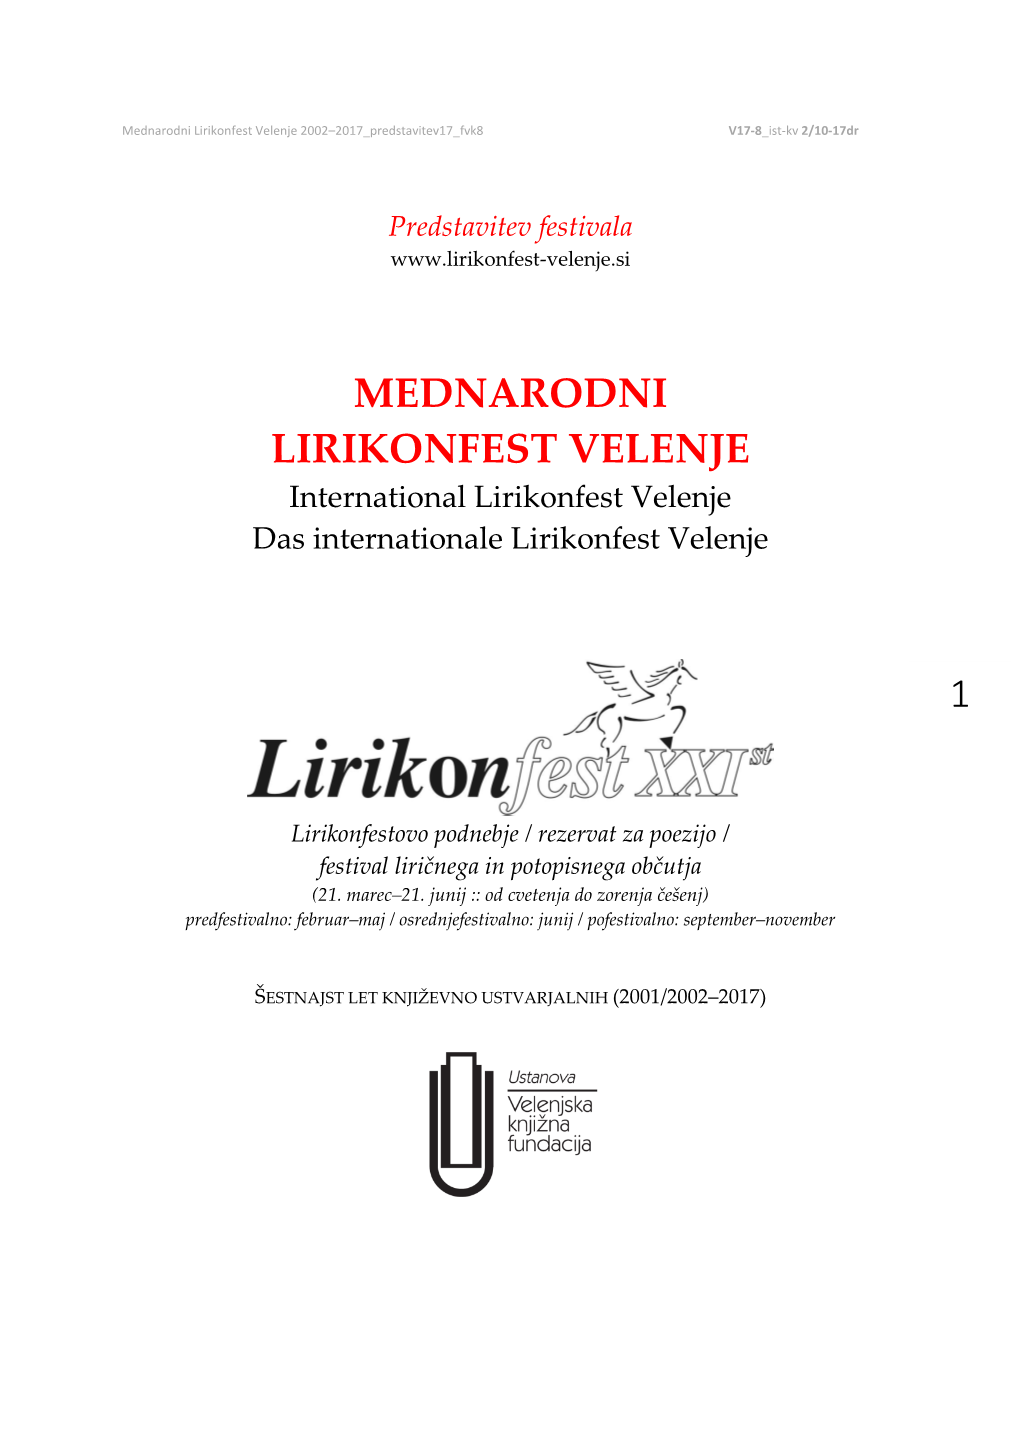 Mednarodni Lirikonfest Velenje – Predstavitev Festivala